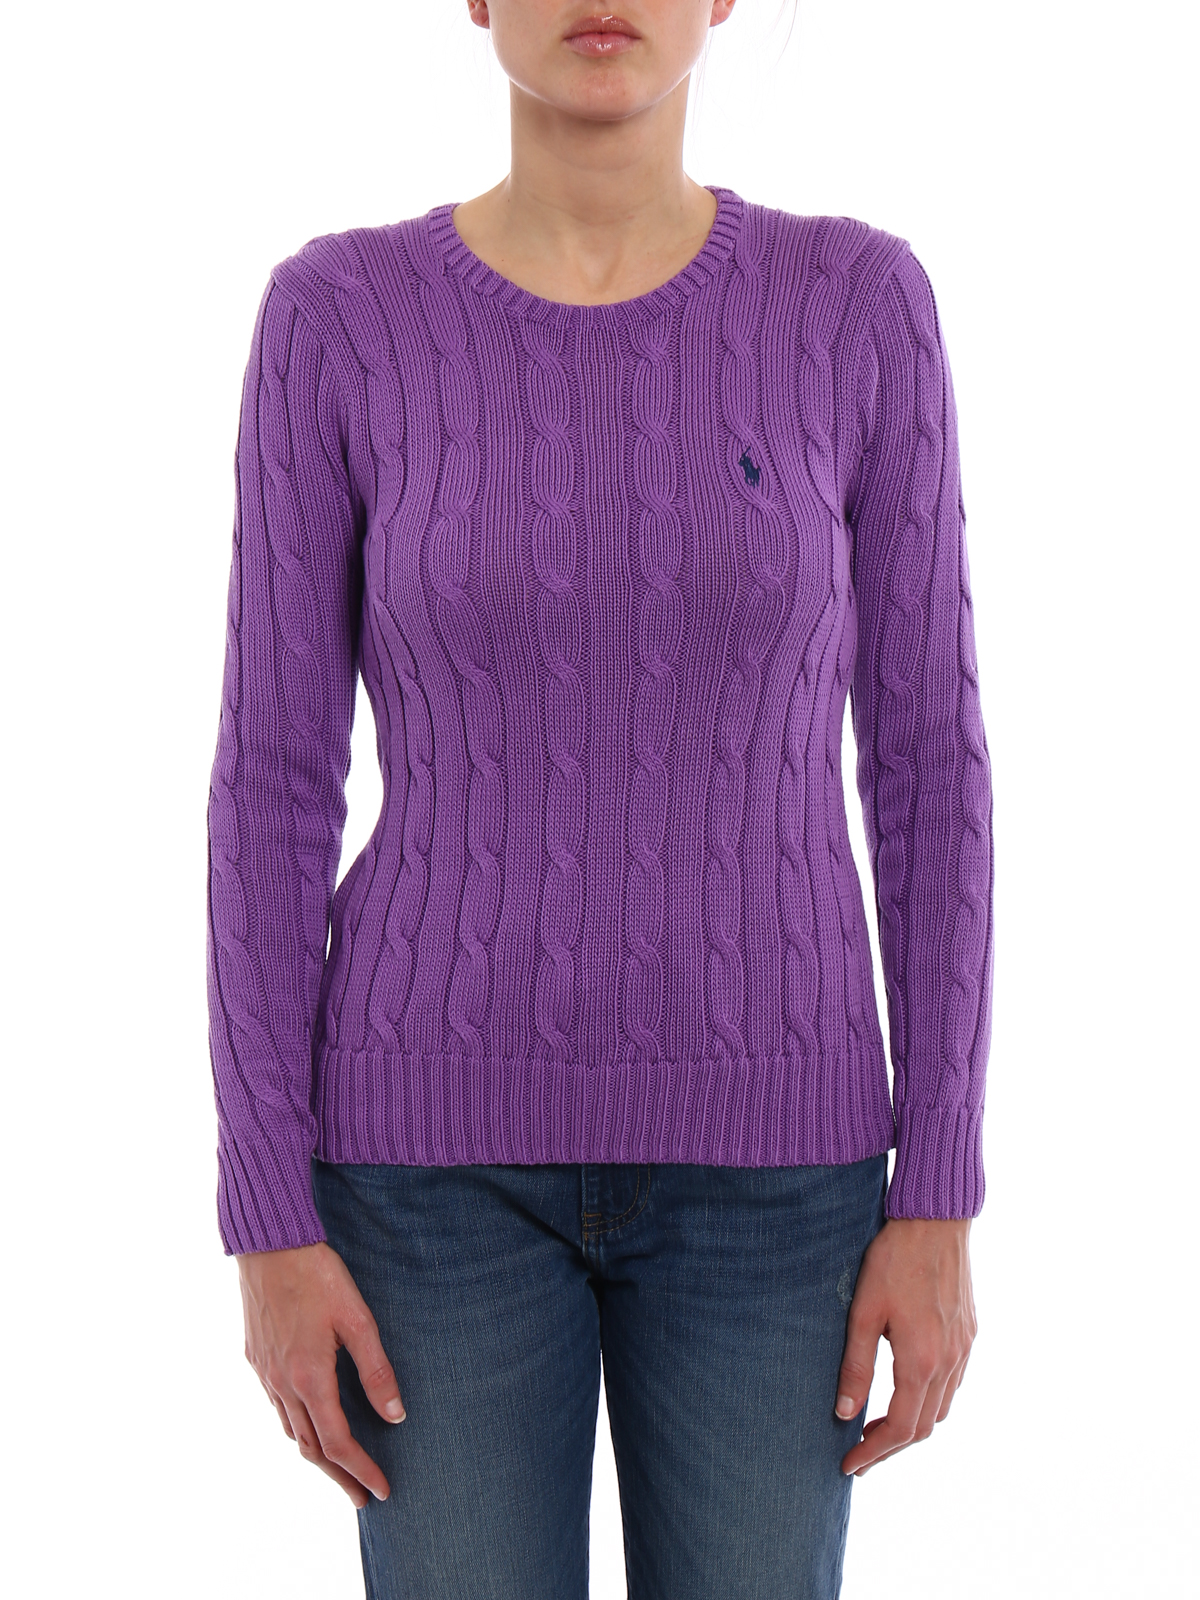 Top 62+ imagen purple ralph lauren sweater - Thptnganamst.edu.vn